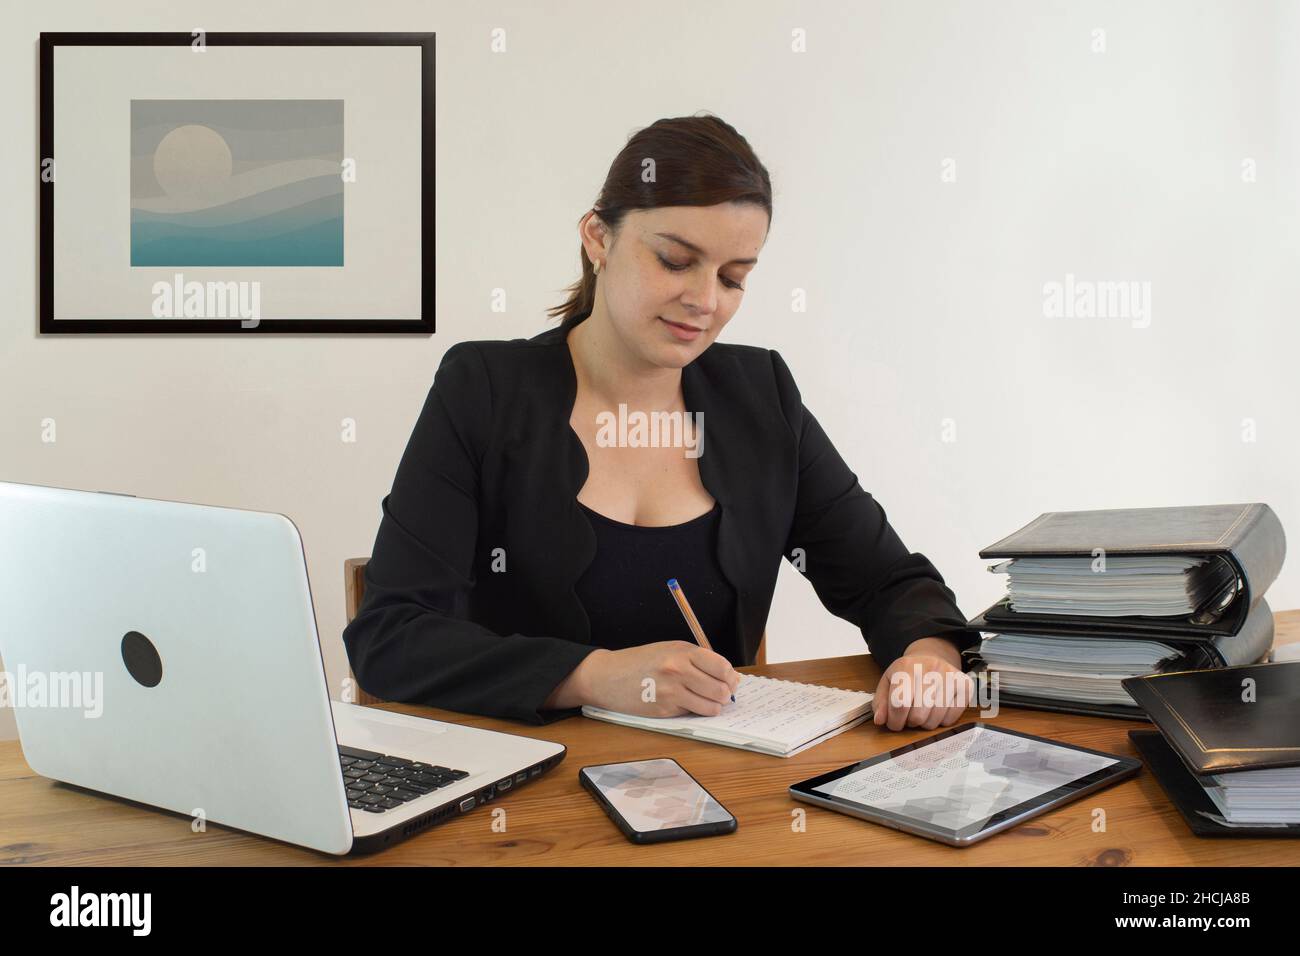 Belle assistante de bureau hispanique souriante heureuse, travaillant assis à son bureau, occupée à écrire dans son carnet contre un mur blanc Banque D'Images